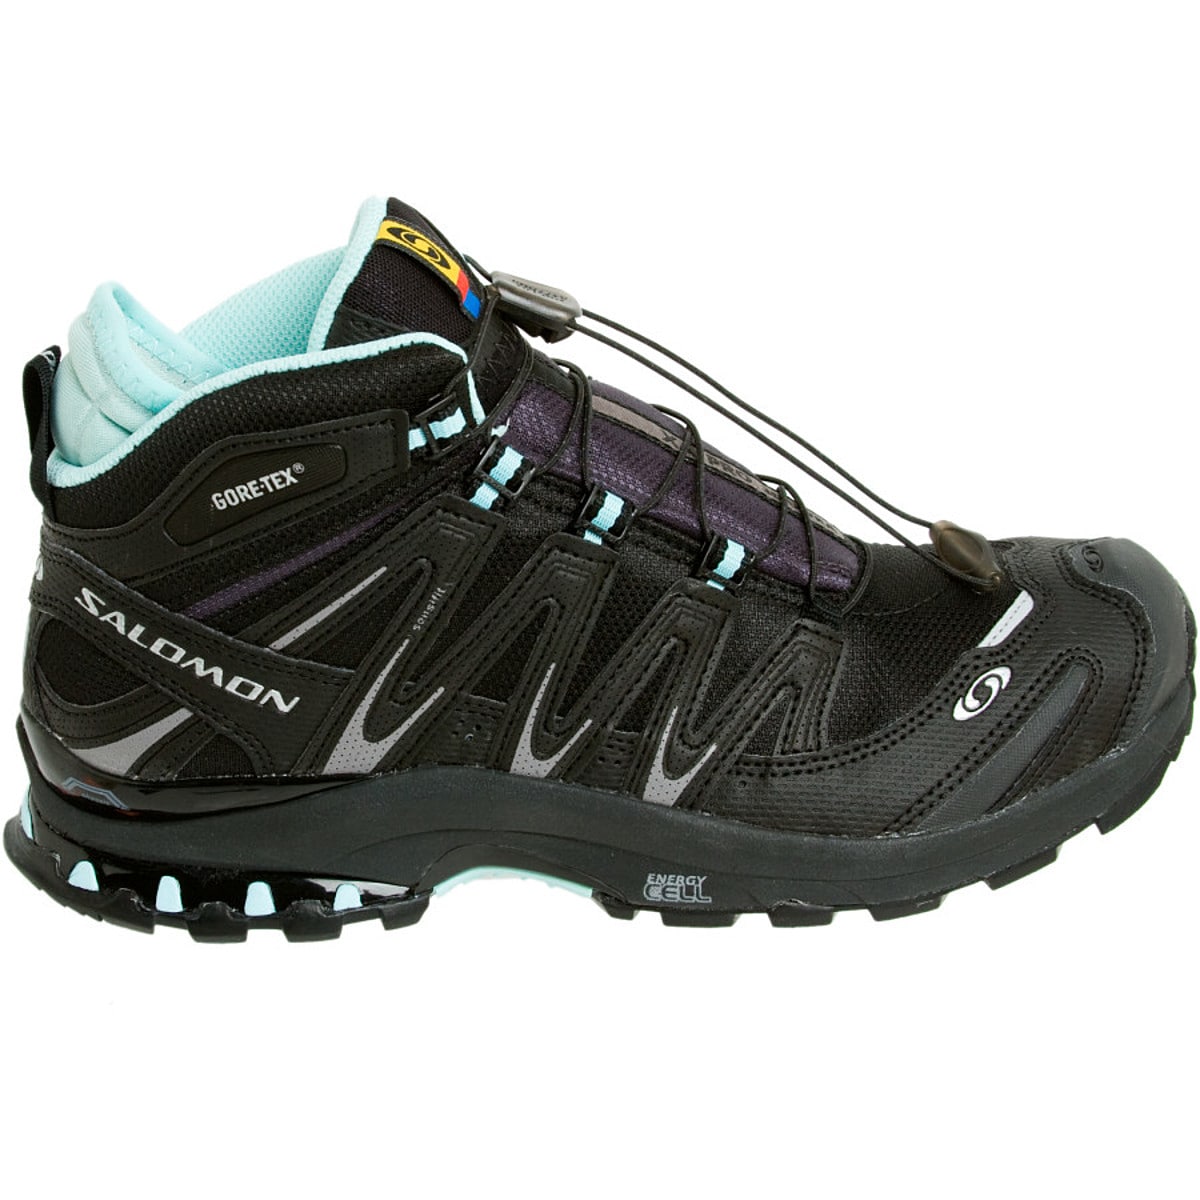 Salomon XA Pro 3D Mid GTX Ultra Running Shoe - Women's - Footwear